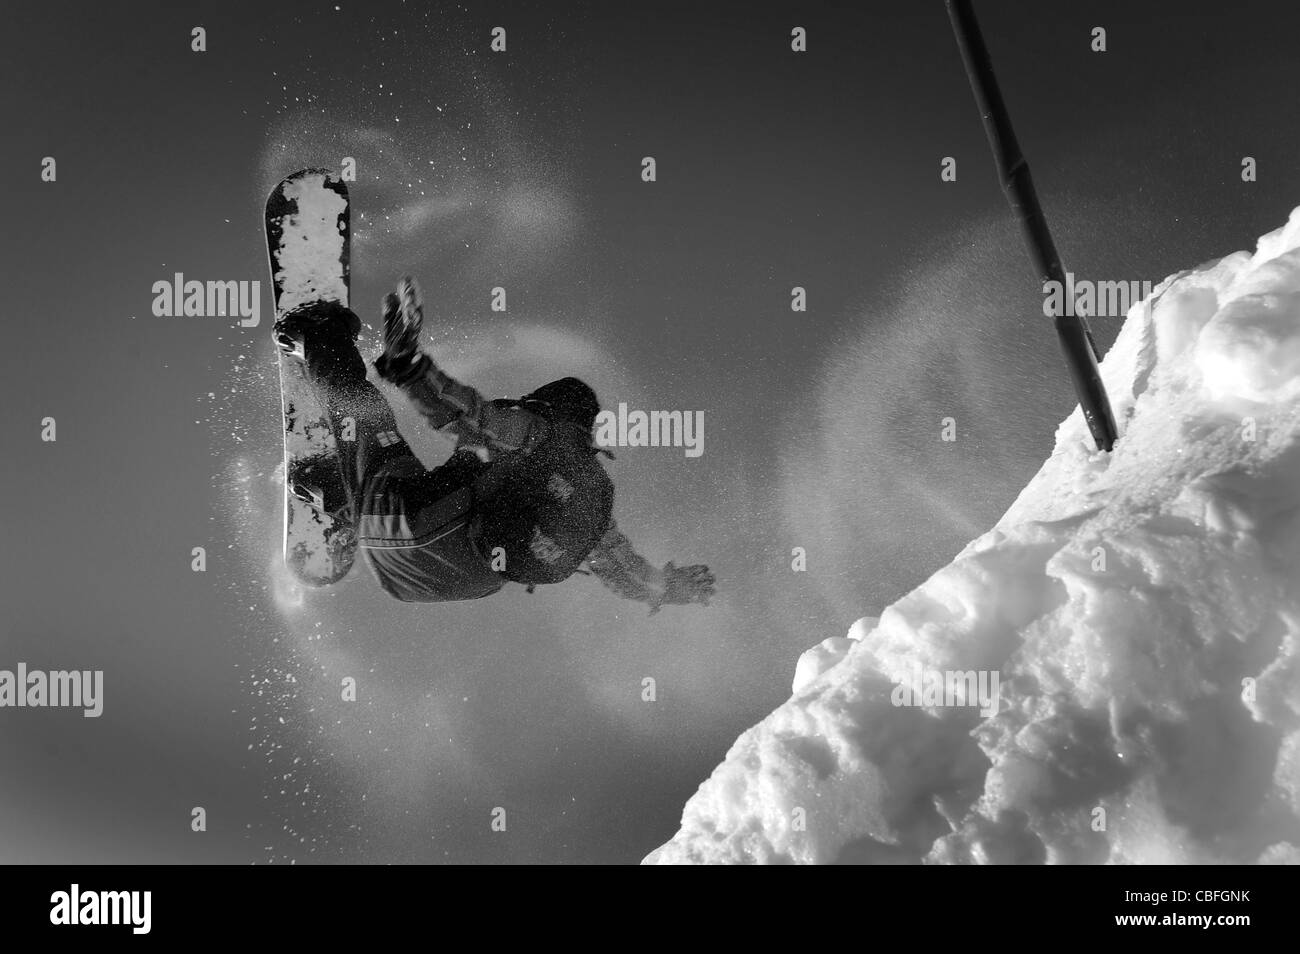 Verschiedenen Skifahren Bilder in Avoriaz in Frankreich aufgenommen. Enthält Skifahrer und Boarder machen Tricks und Sprünge. Stockfoto